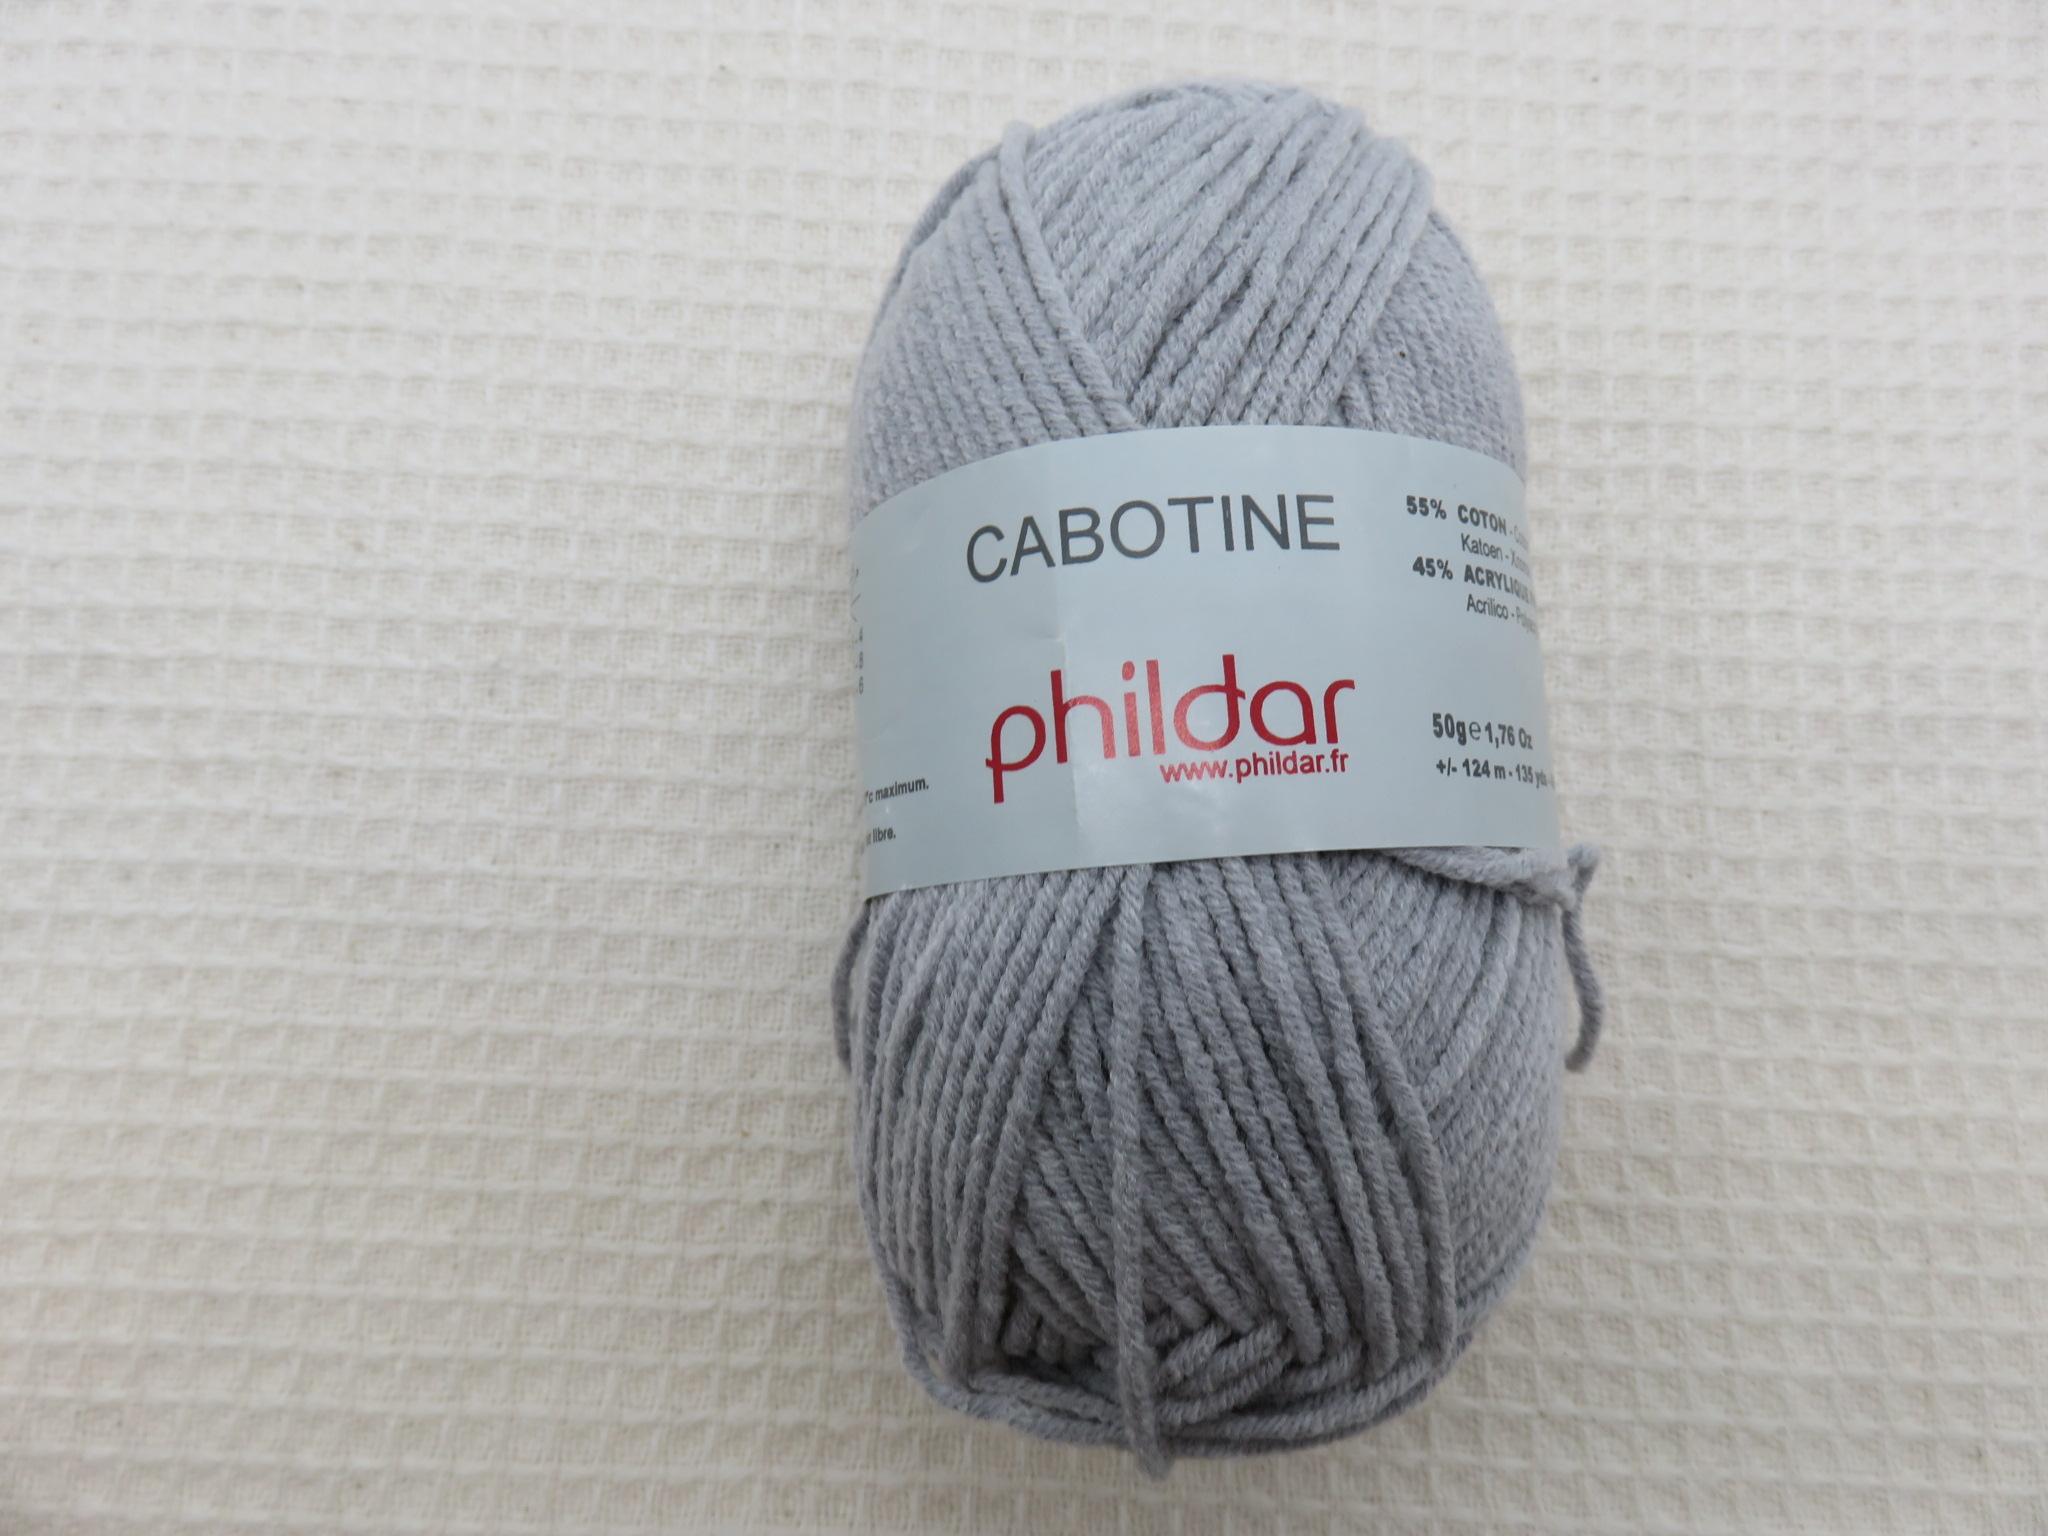 Pelote Cabotine écume Phildar coton acrylique